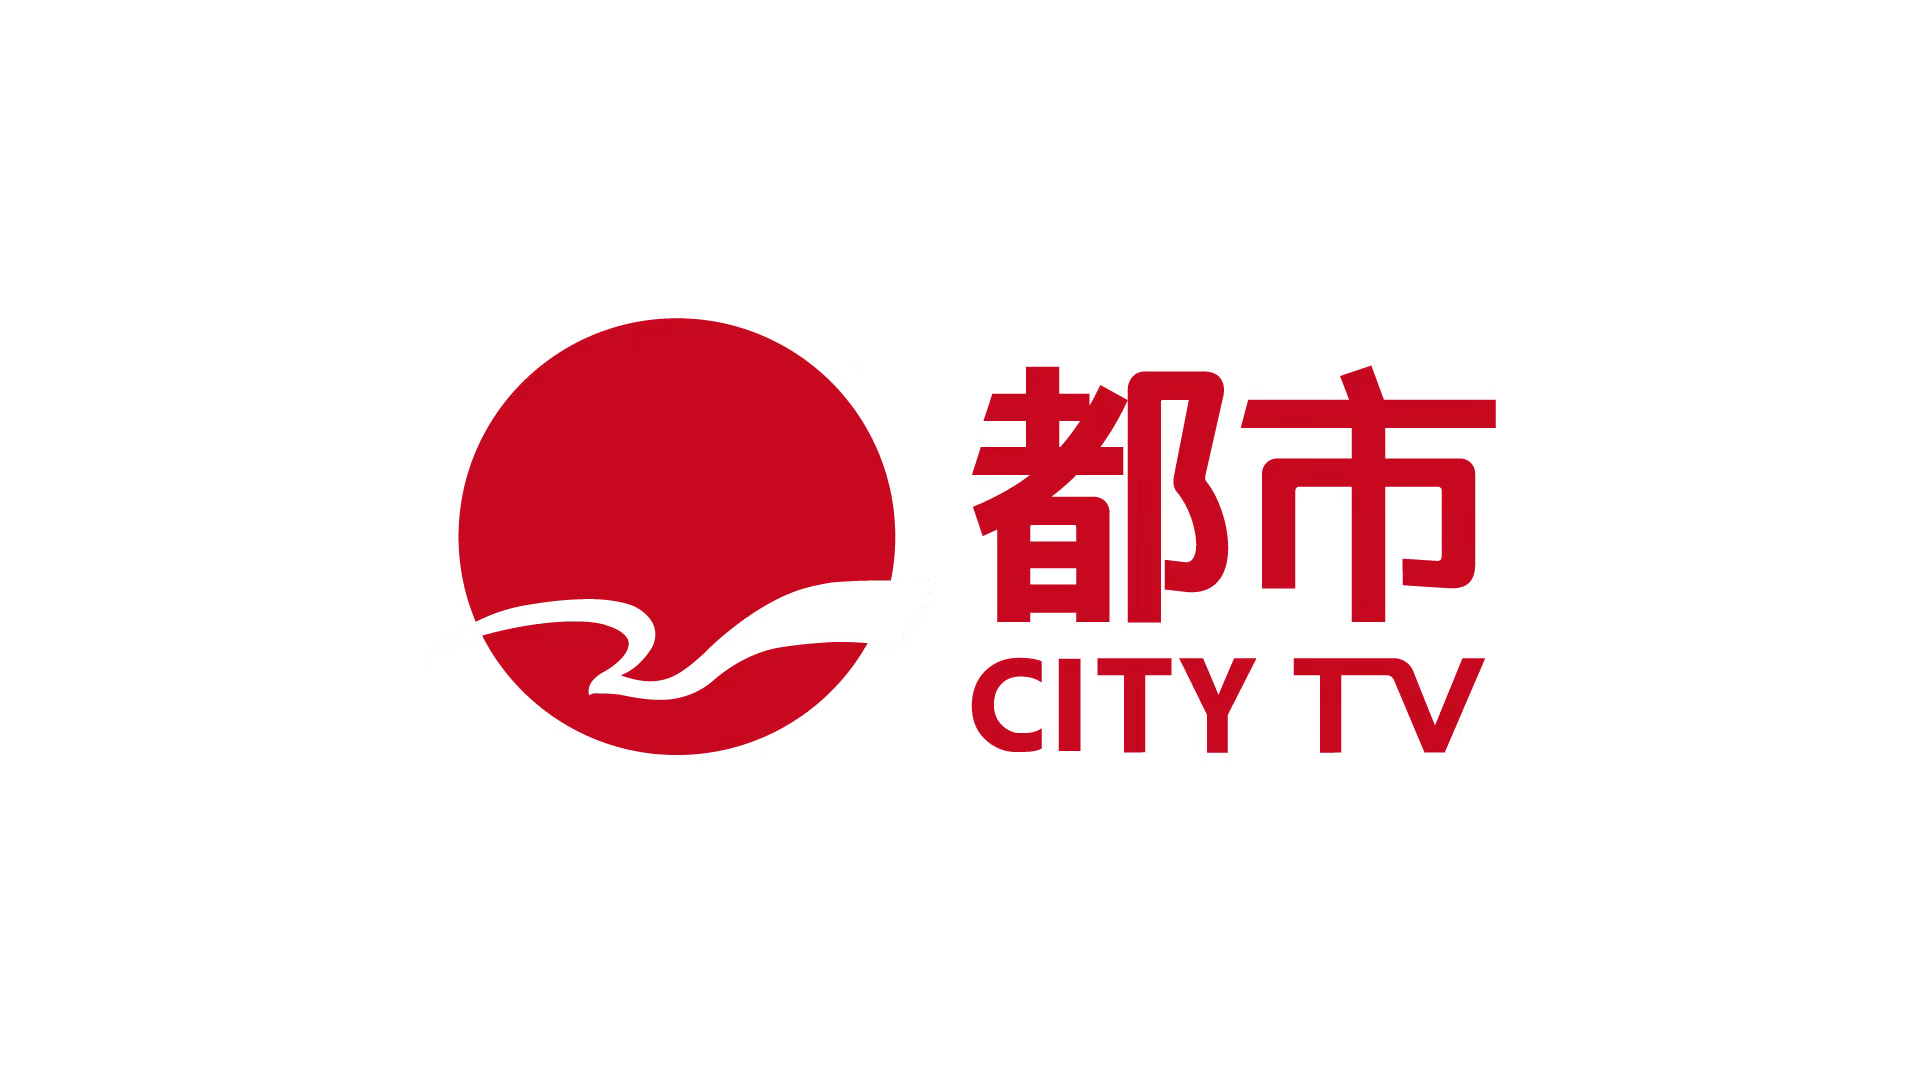 全新频道登场,上海都市频道即将热力开播,节目太丰富啦!